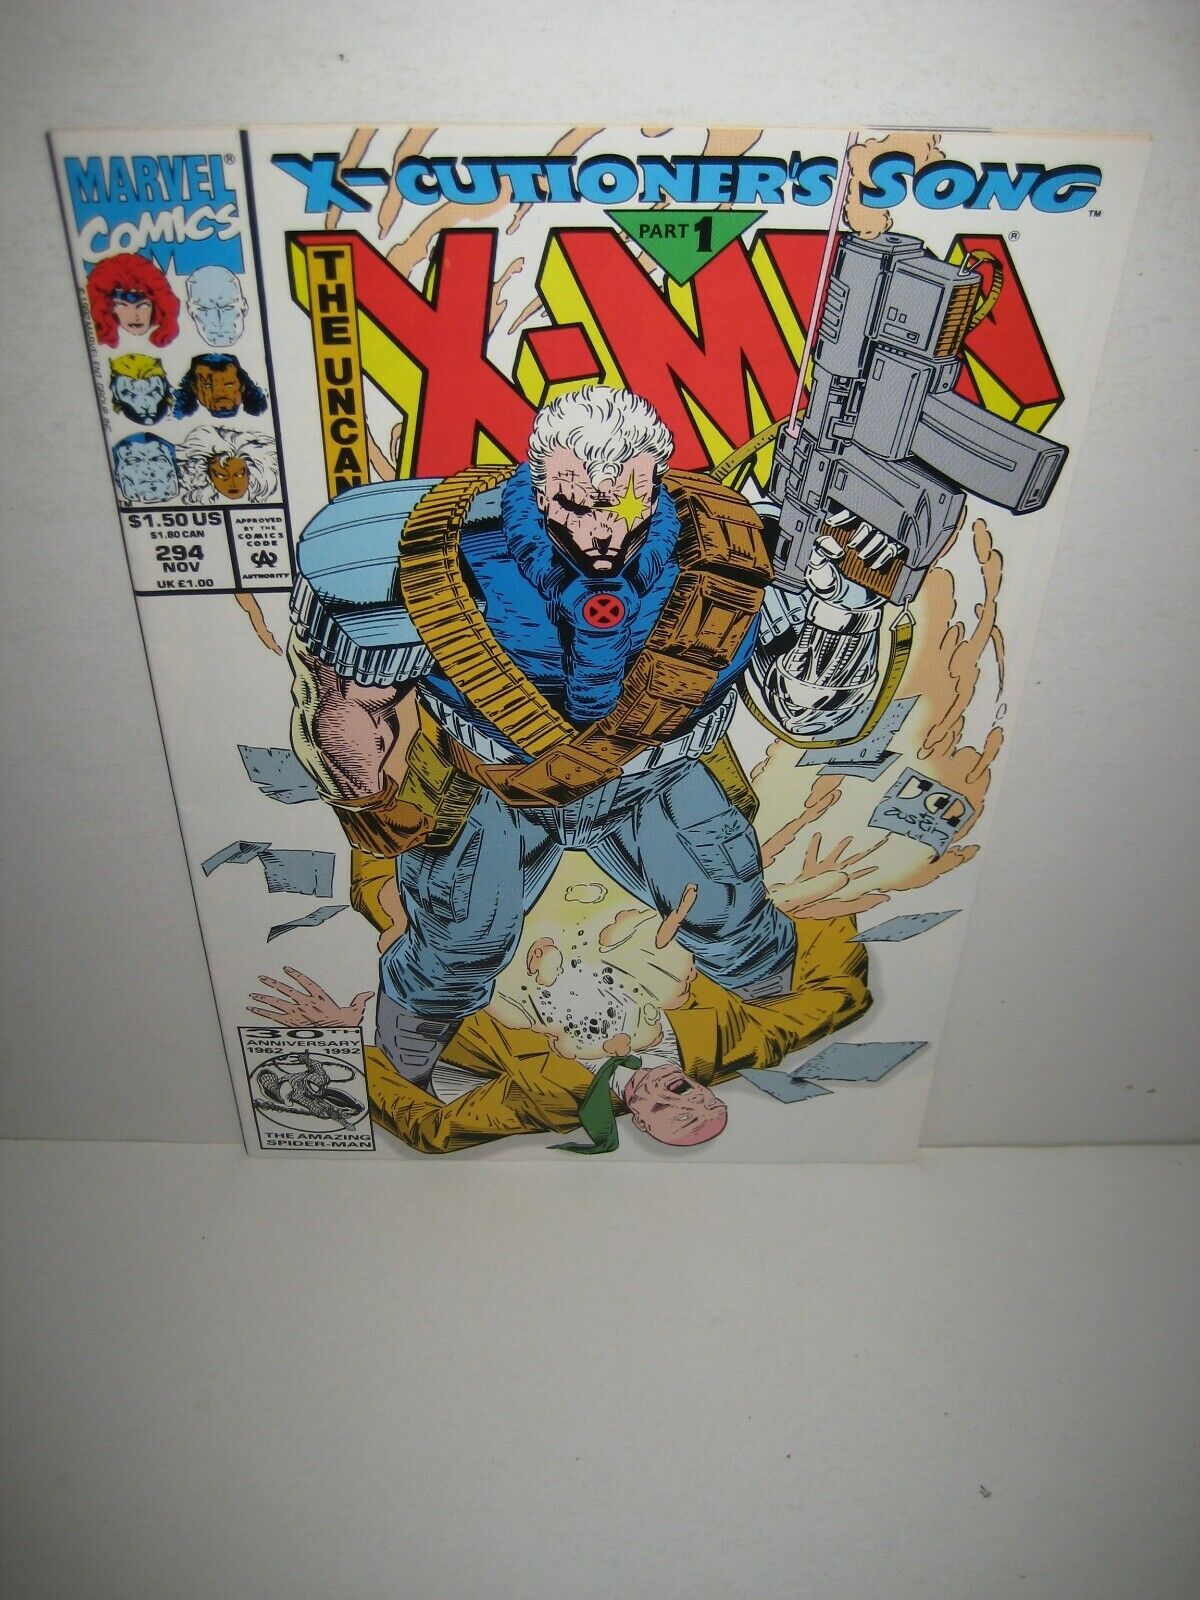 Uncanny X-Men VOL 1 PICK & CHOOSE ISSUES MARVEL COMICS BRONZE COPPER MODERN